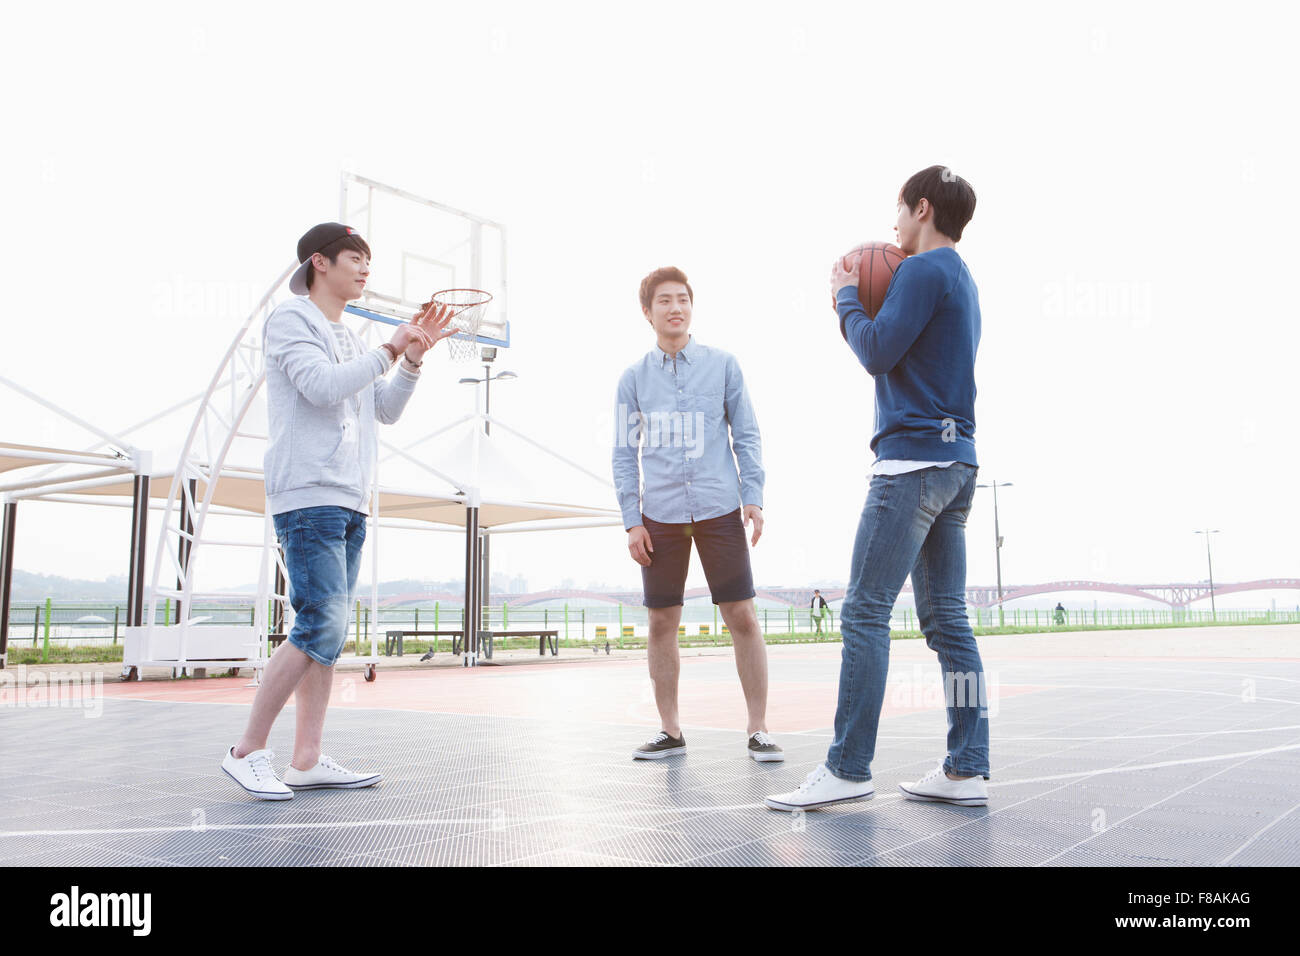 Drei junge Männer stehen auf dem Basketballplatz Stockfoto